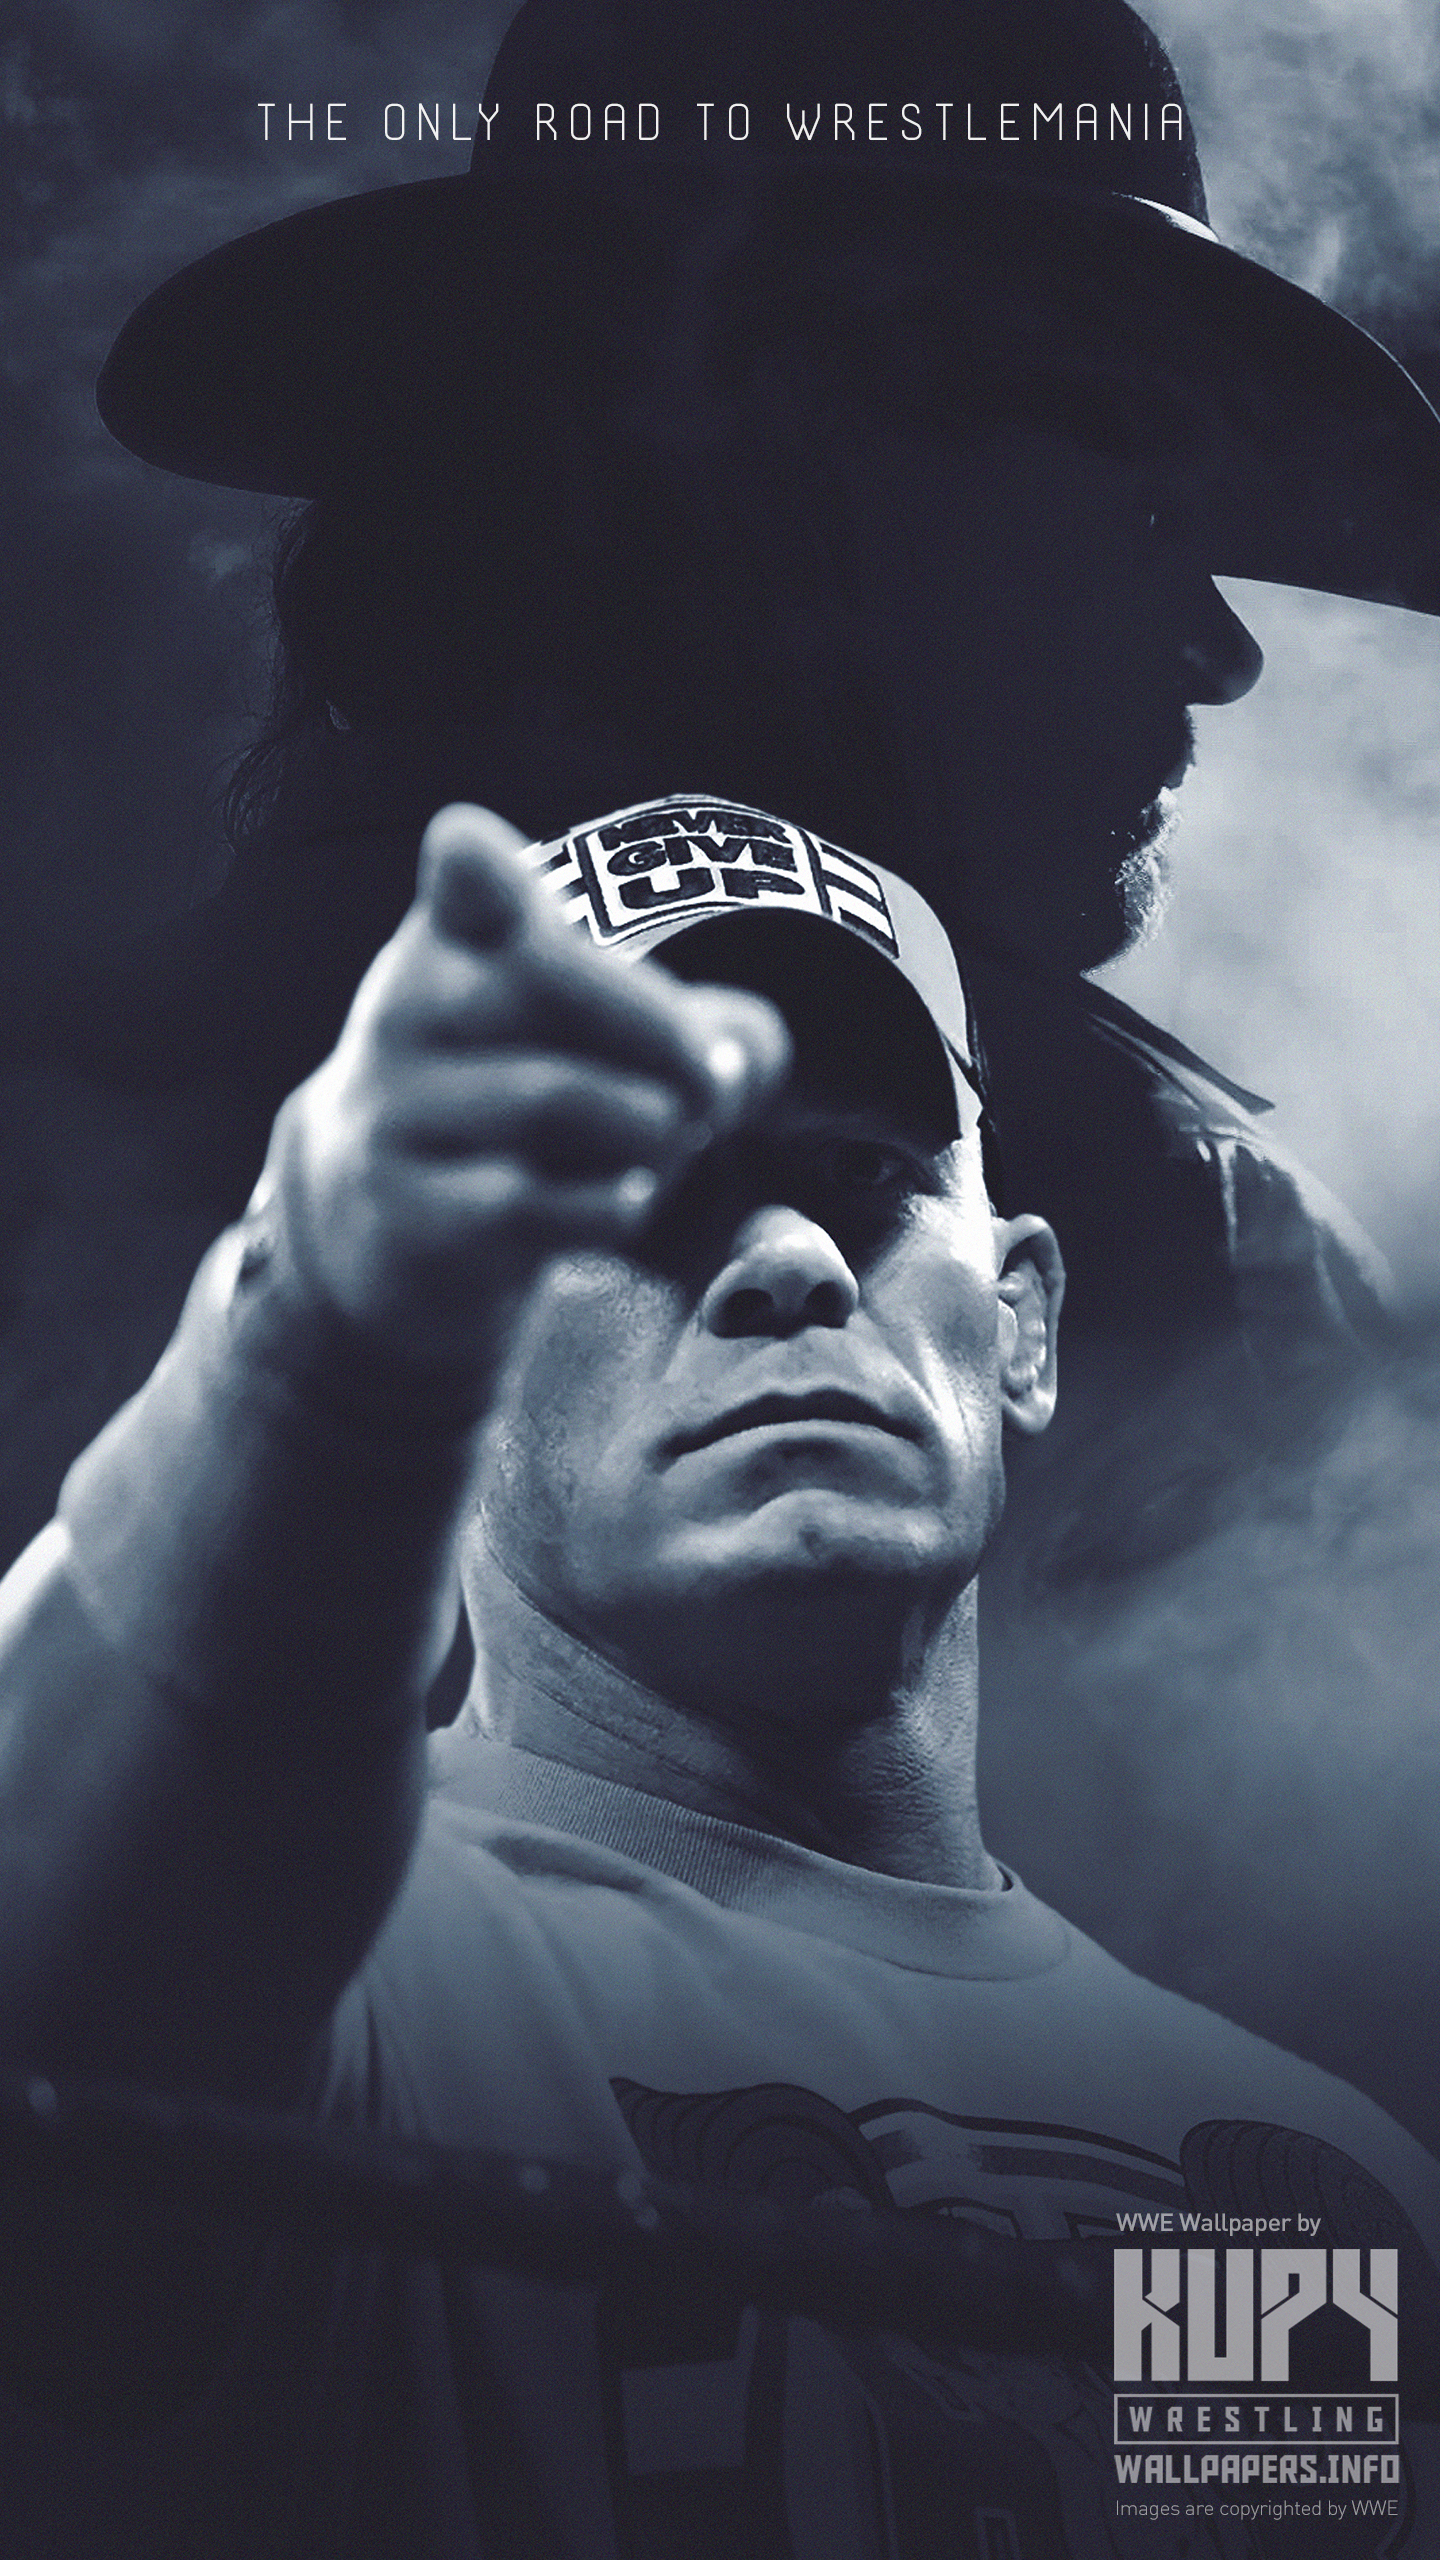 Road to WrestleMania 34: John Cena vs. The Undertaker poster & wallpaper! -  Kupy Wrestling Wallpapers